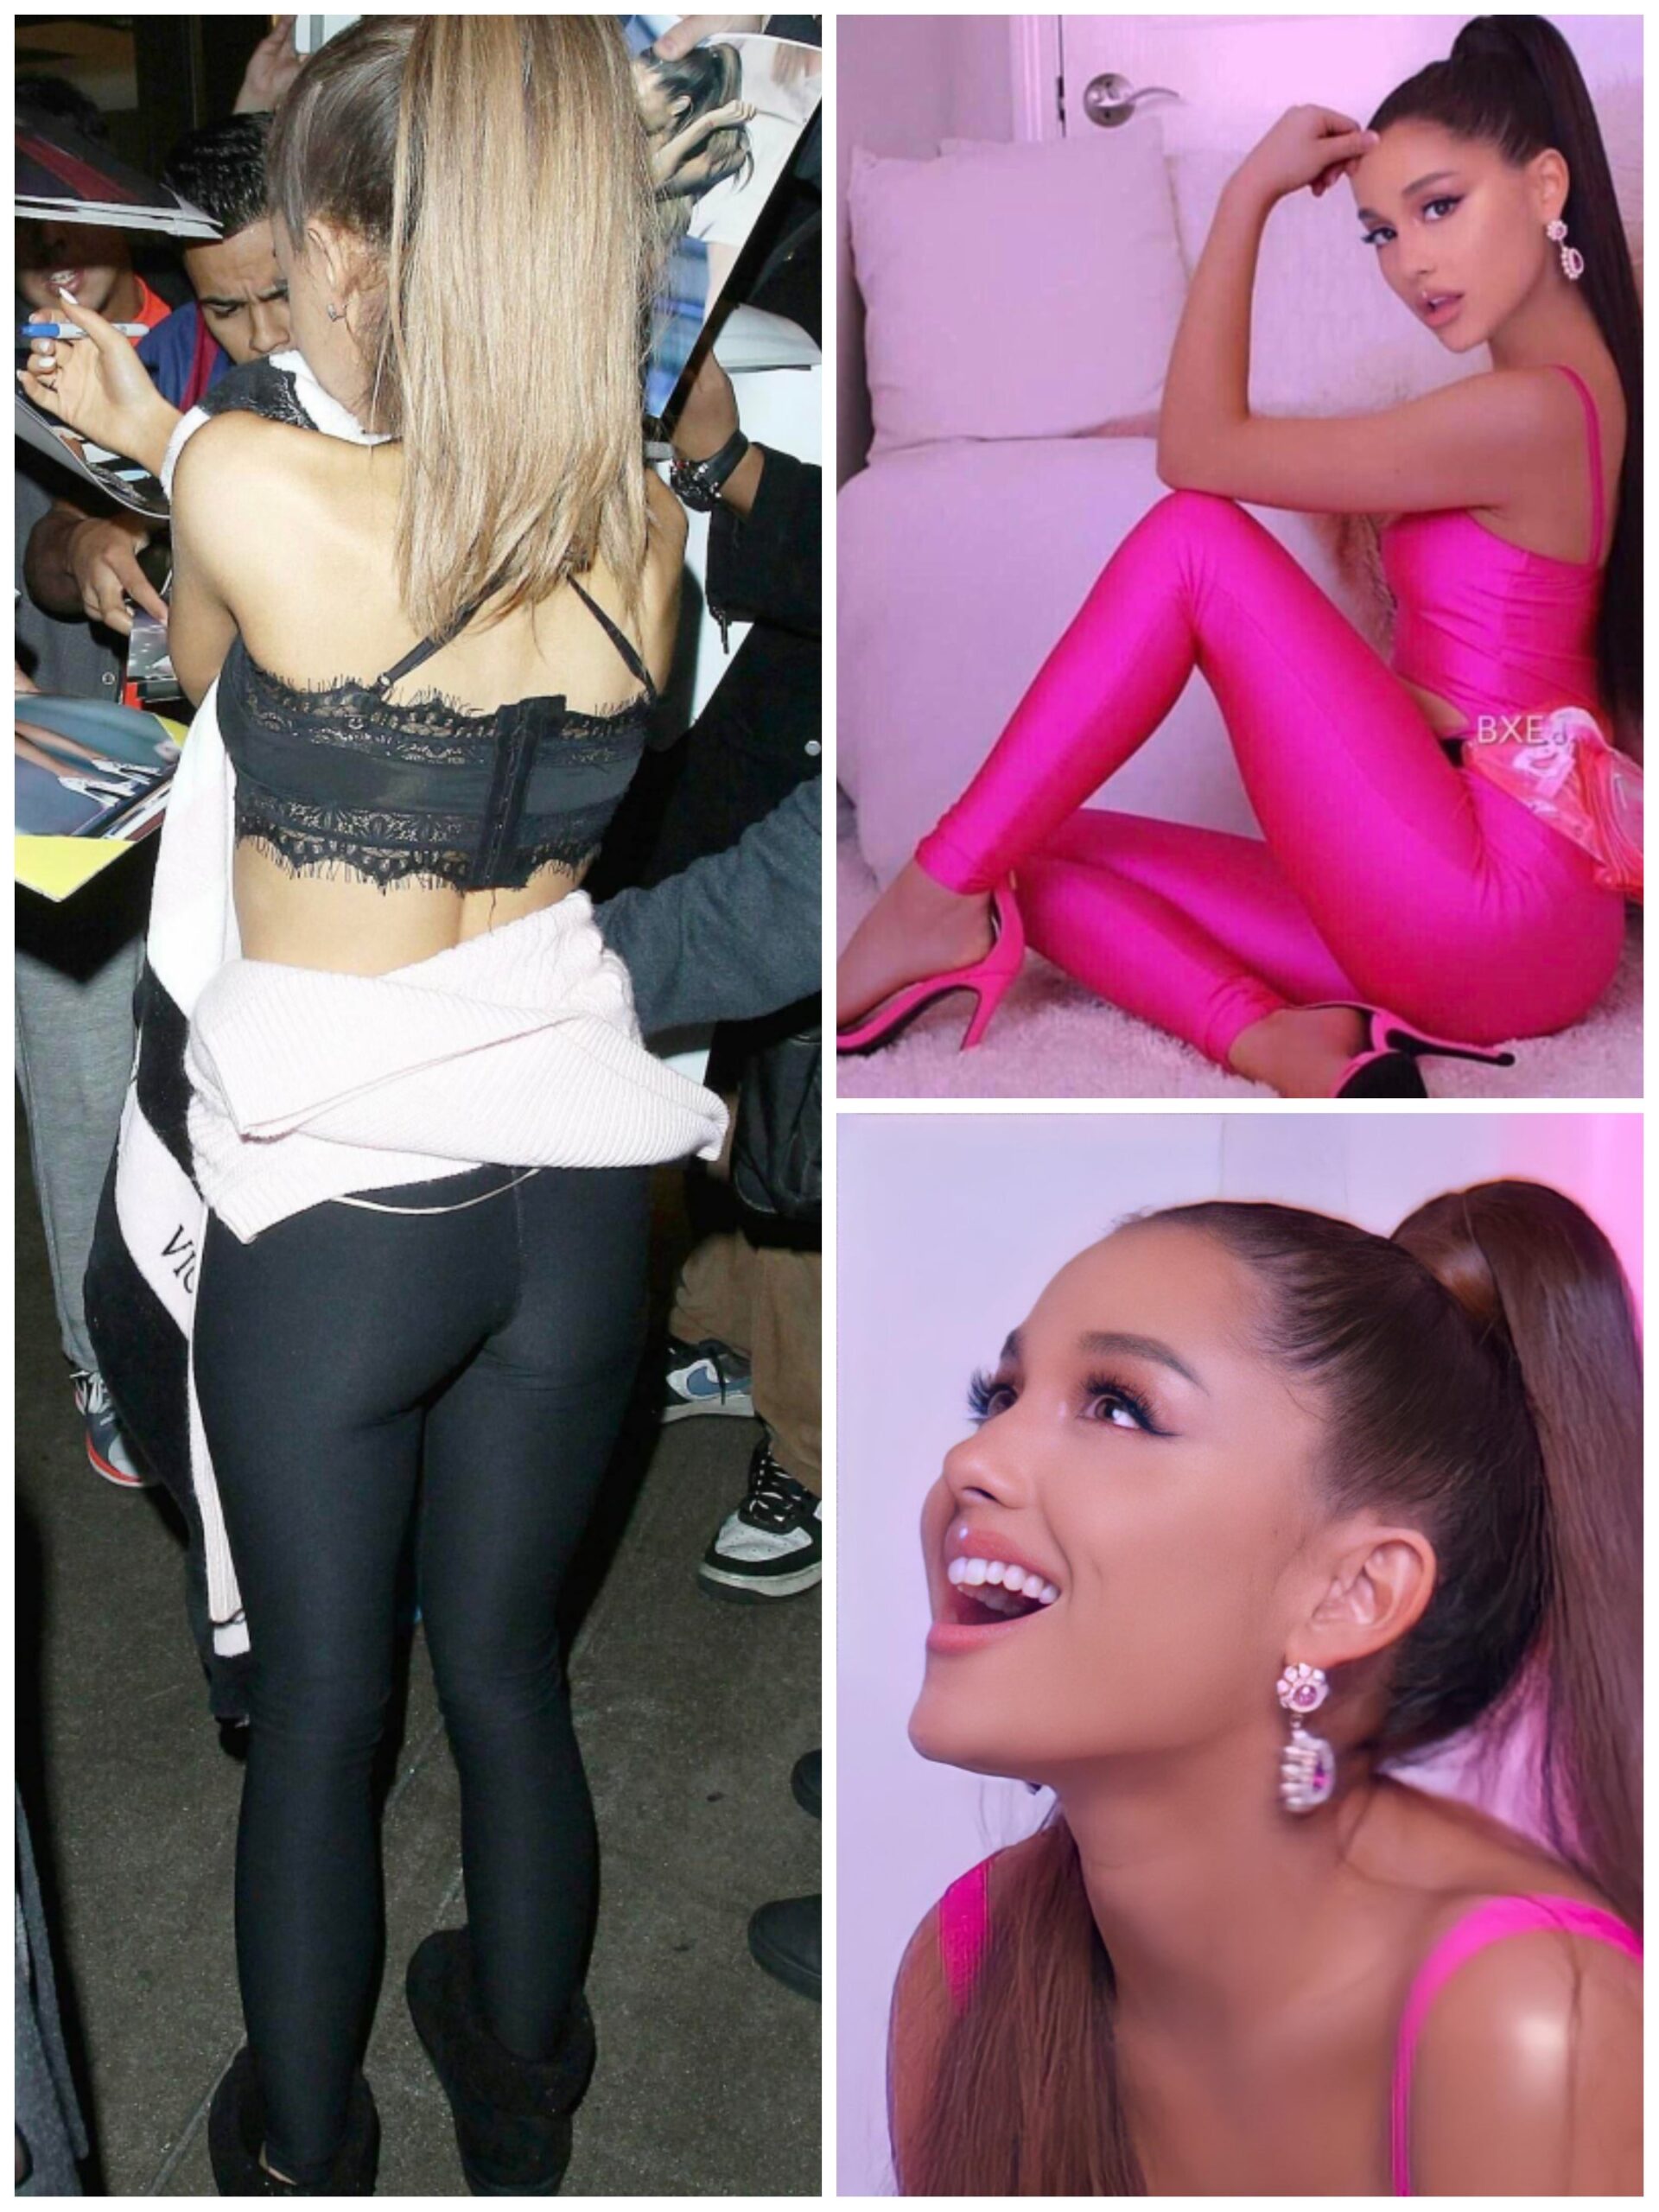 Ariana Grande Collage